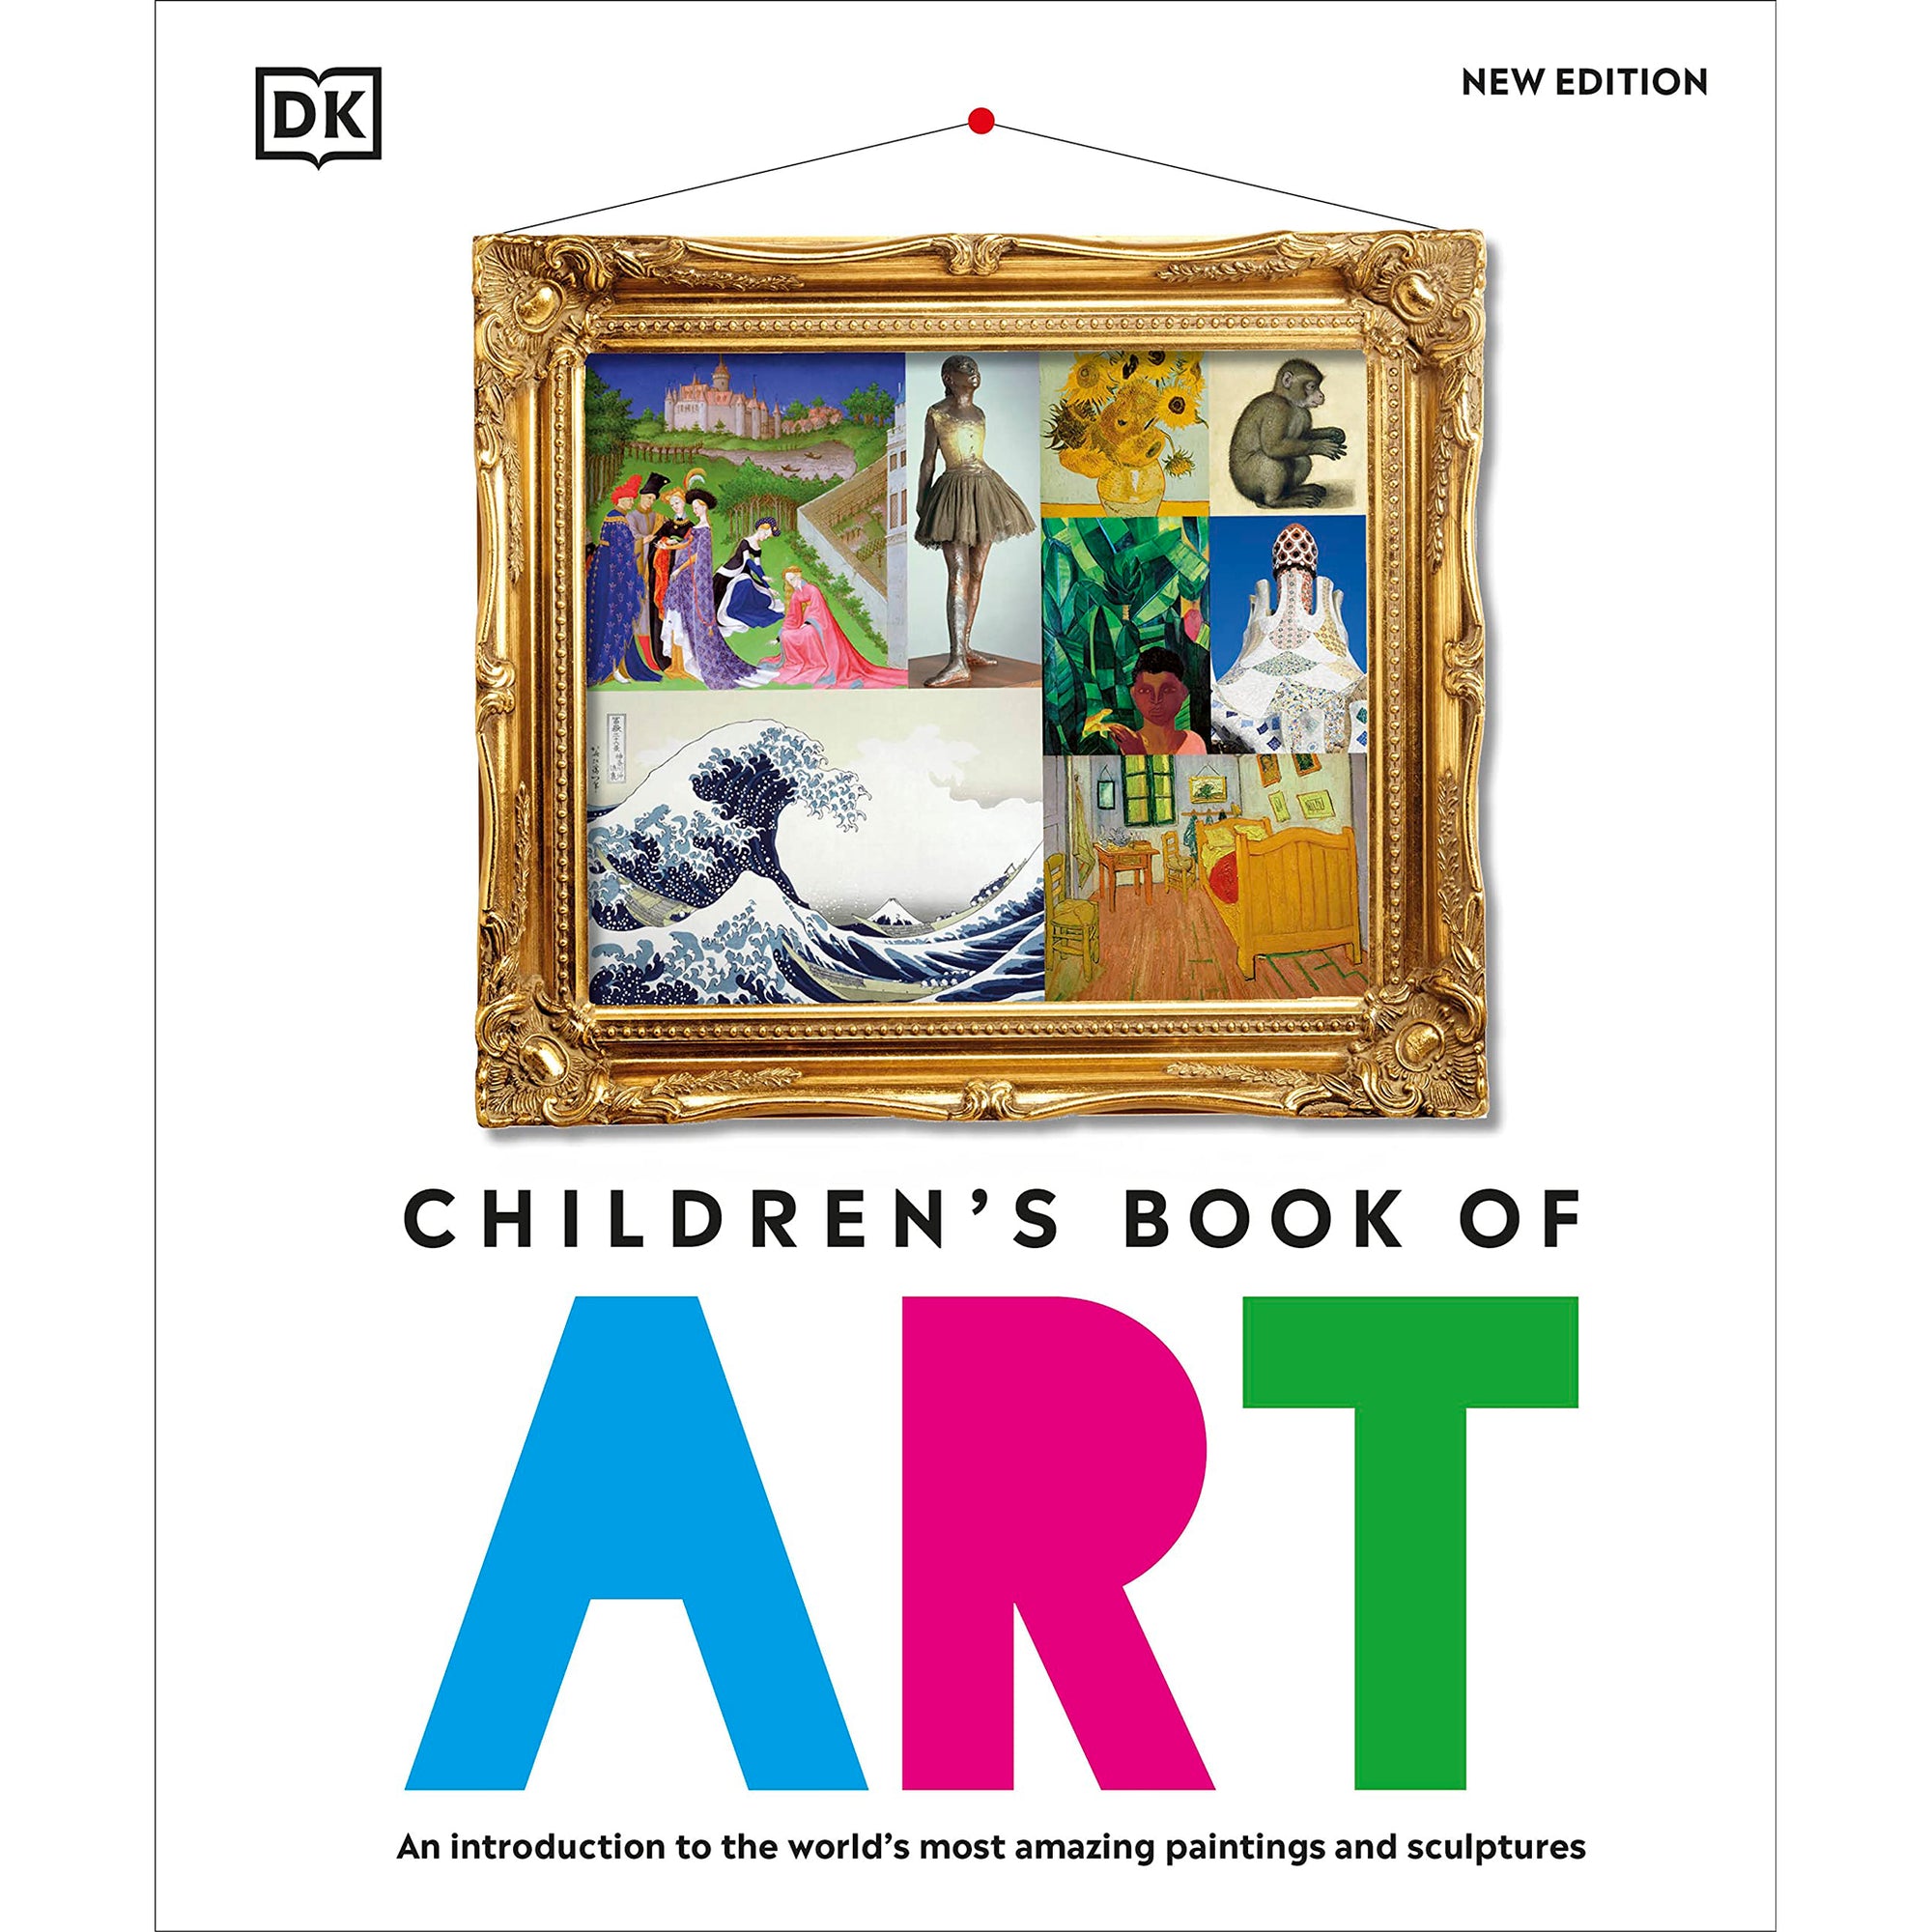 The GIANT List of Children's Art Books